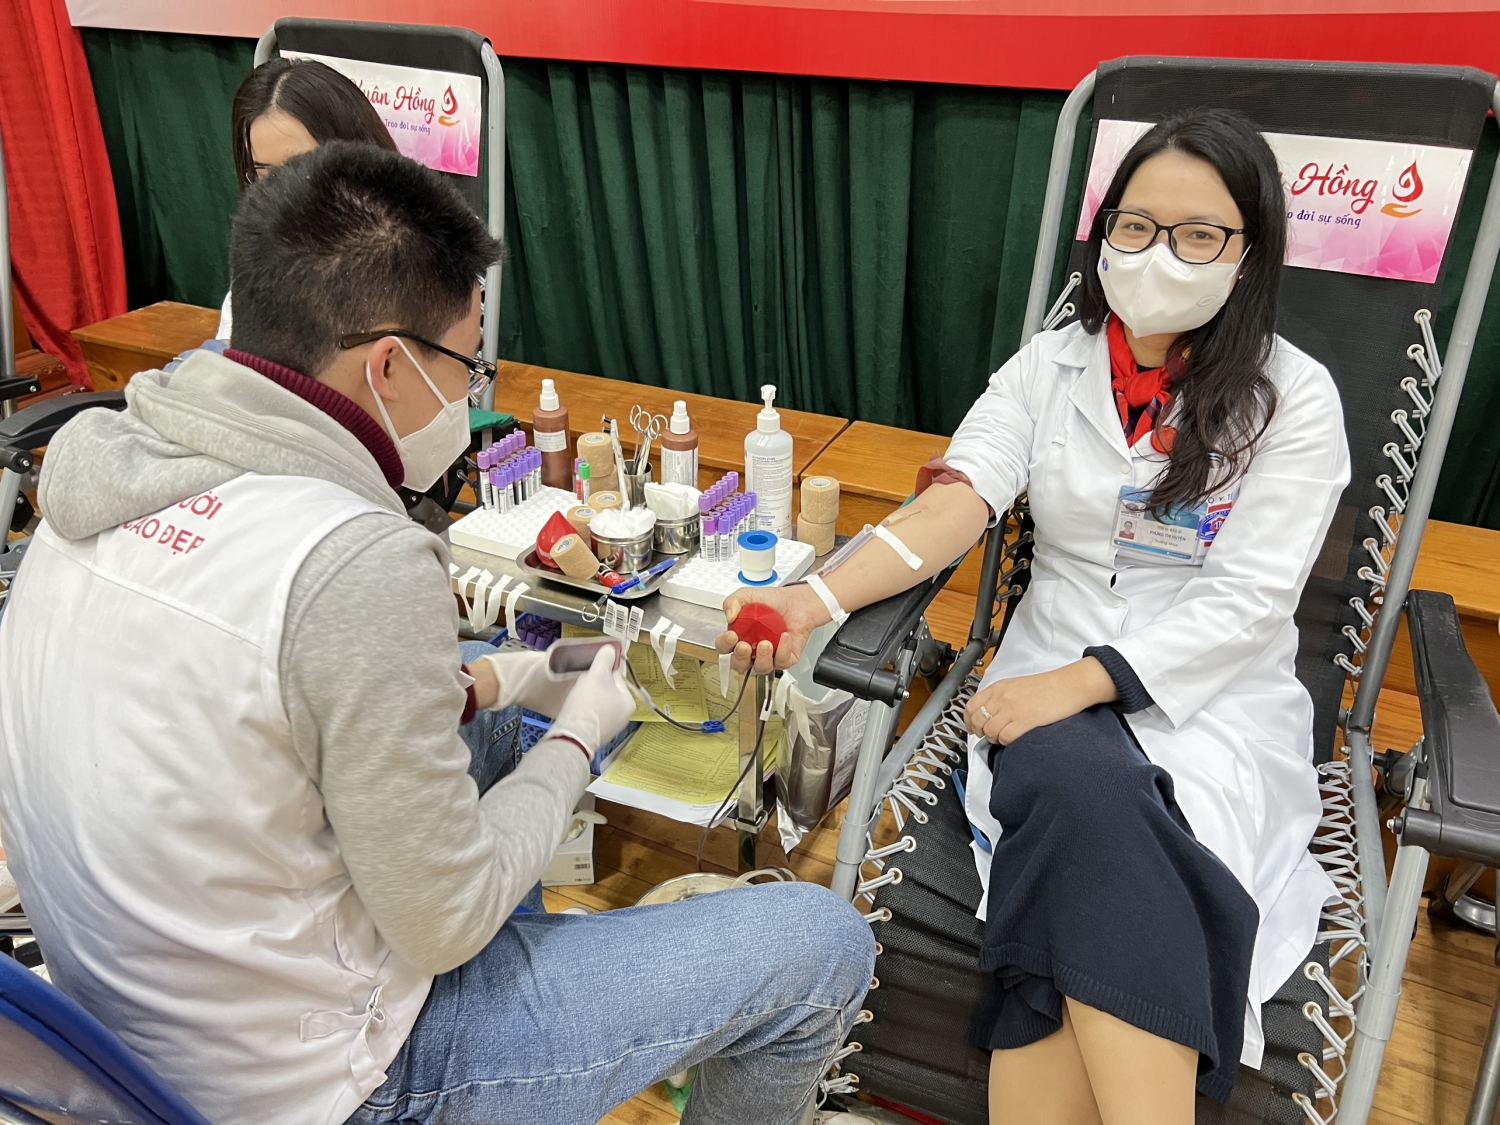 Hơn 300 cán bộ y tế Bệnh viện K tham gia hiến máu vì người bệnh